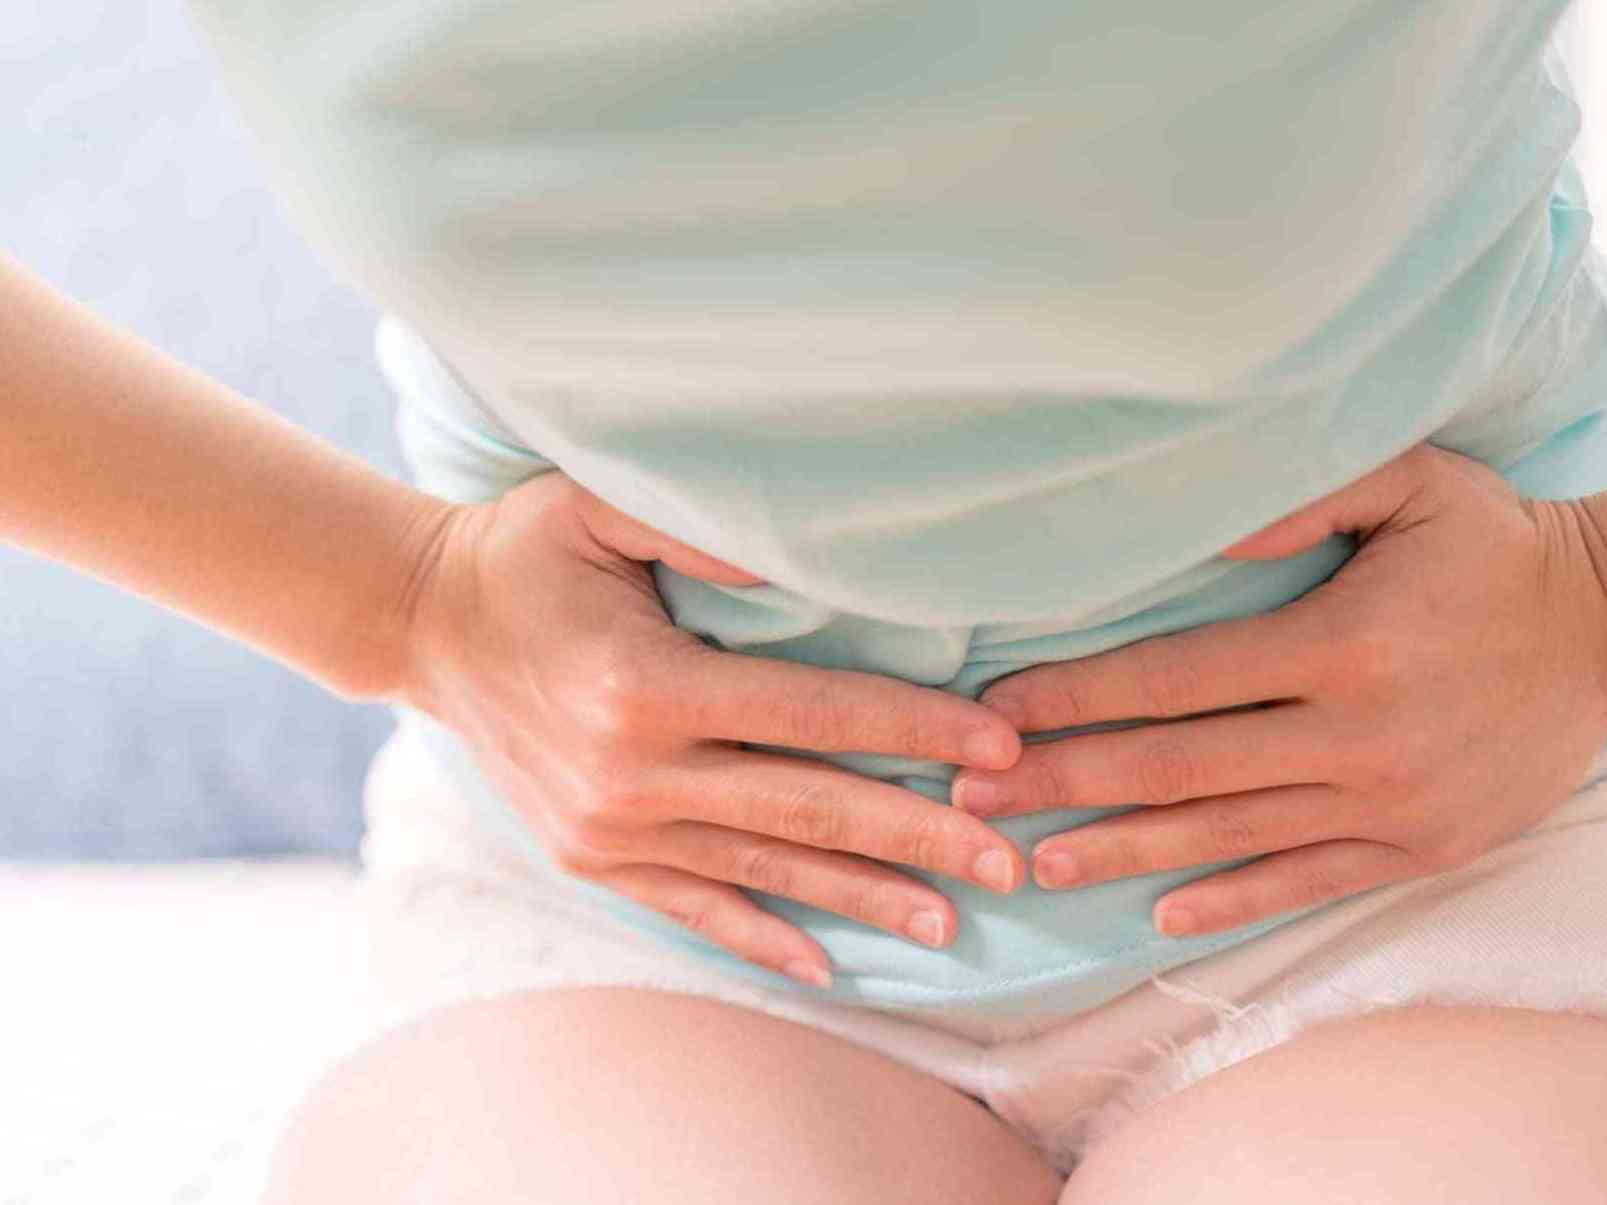 盆腔炎是一种常见的妇科疾病